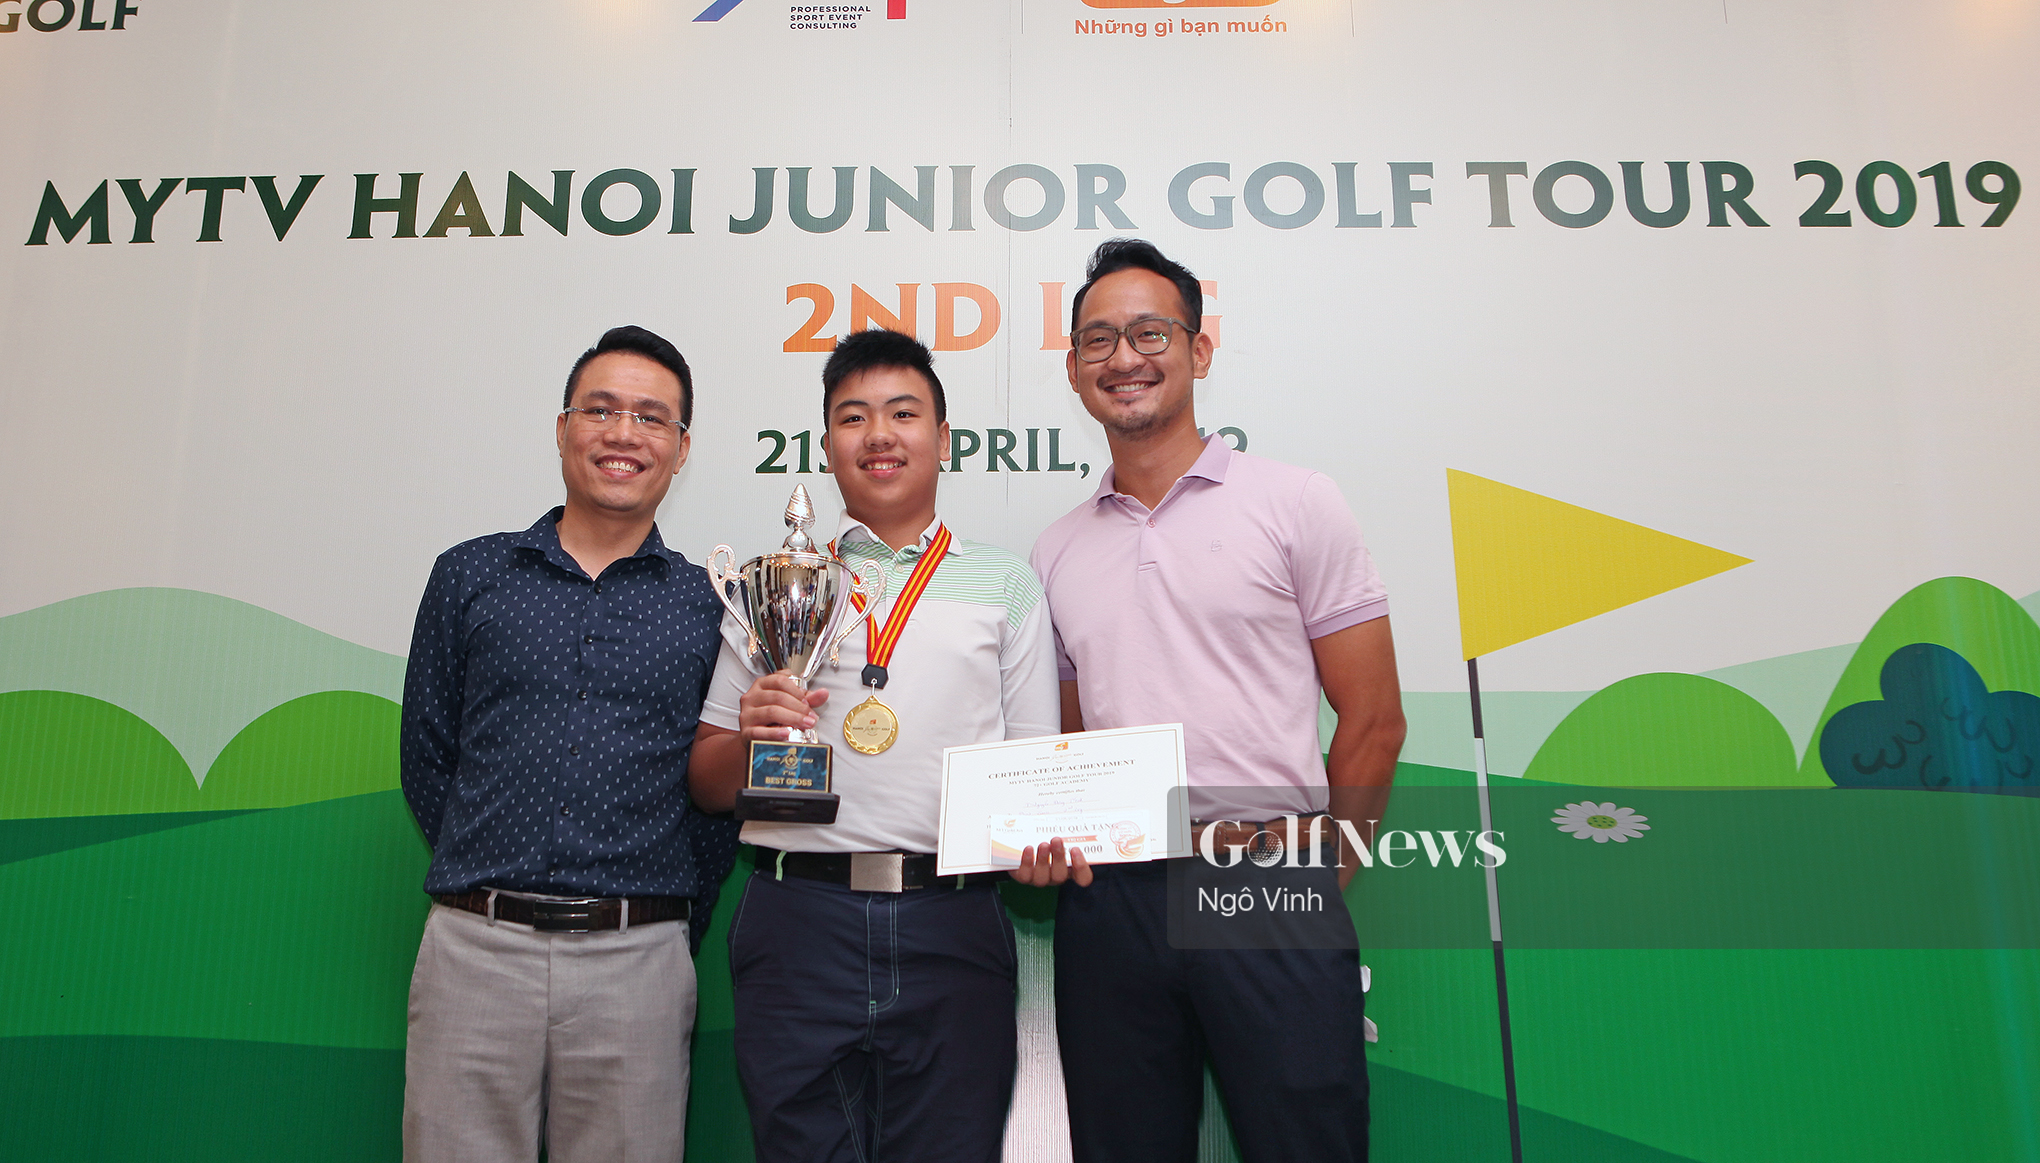 Vòng 2 - MyTV Ha Noi Junior Golf Tour 2019: Golfer Nguyễn Đặng Minh giành Best Gross với 76 gậy